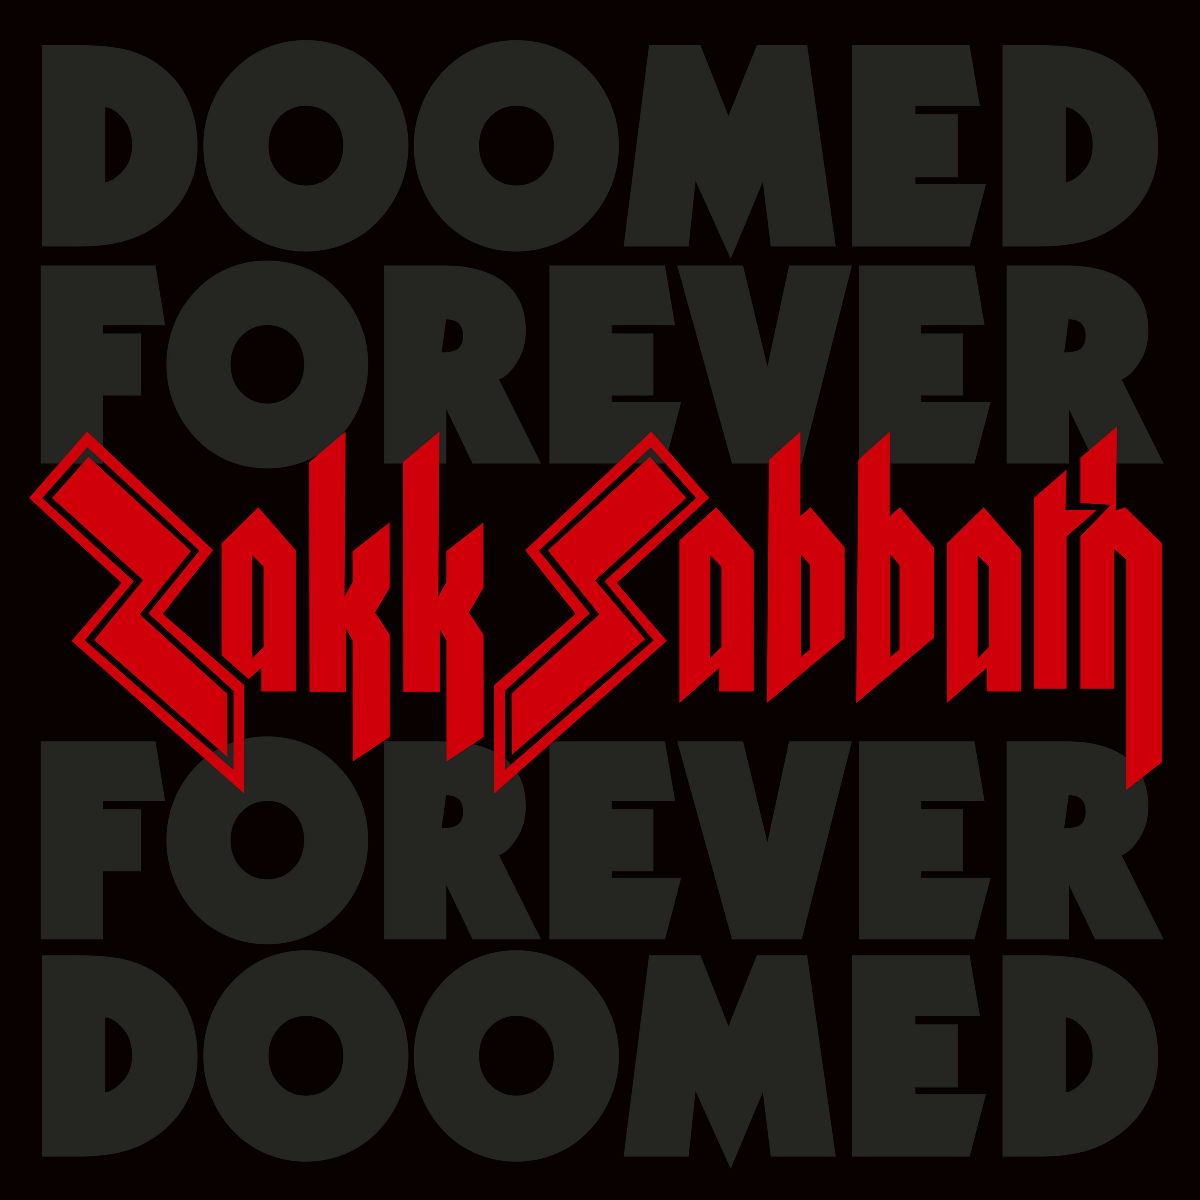 ZAKK SABBATH announce new double album Doomed Forever Forever